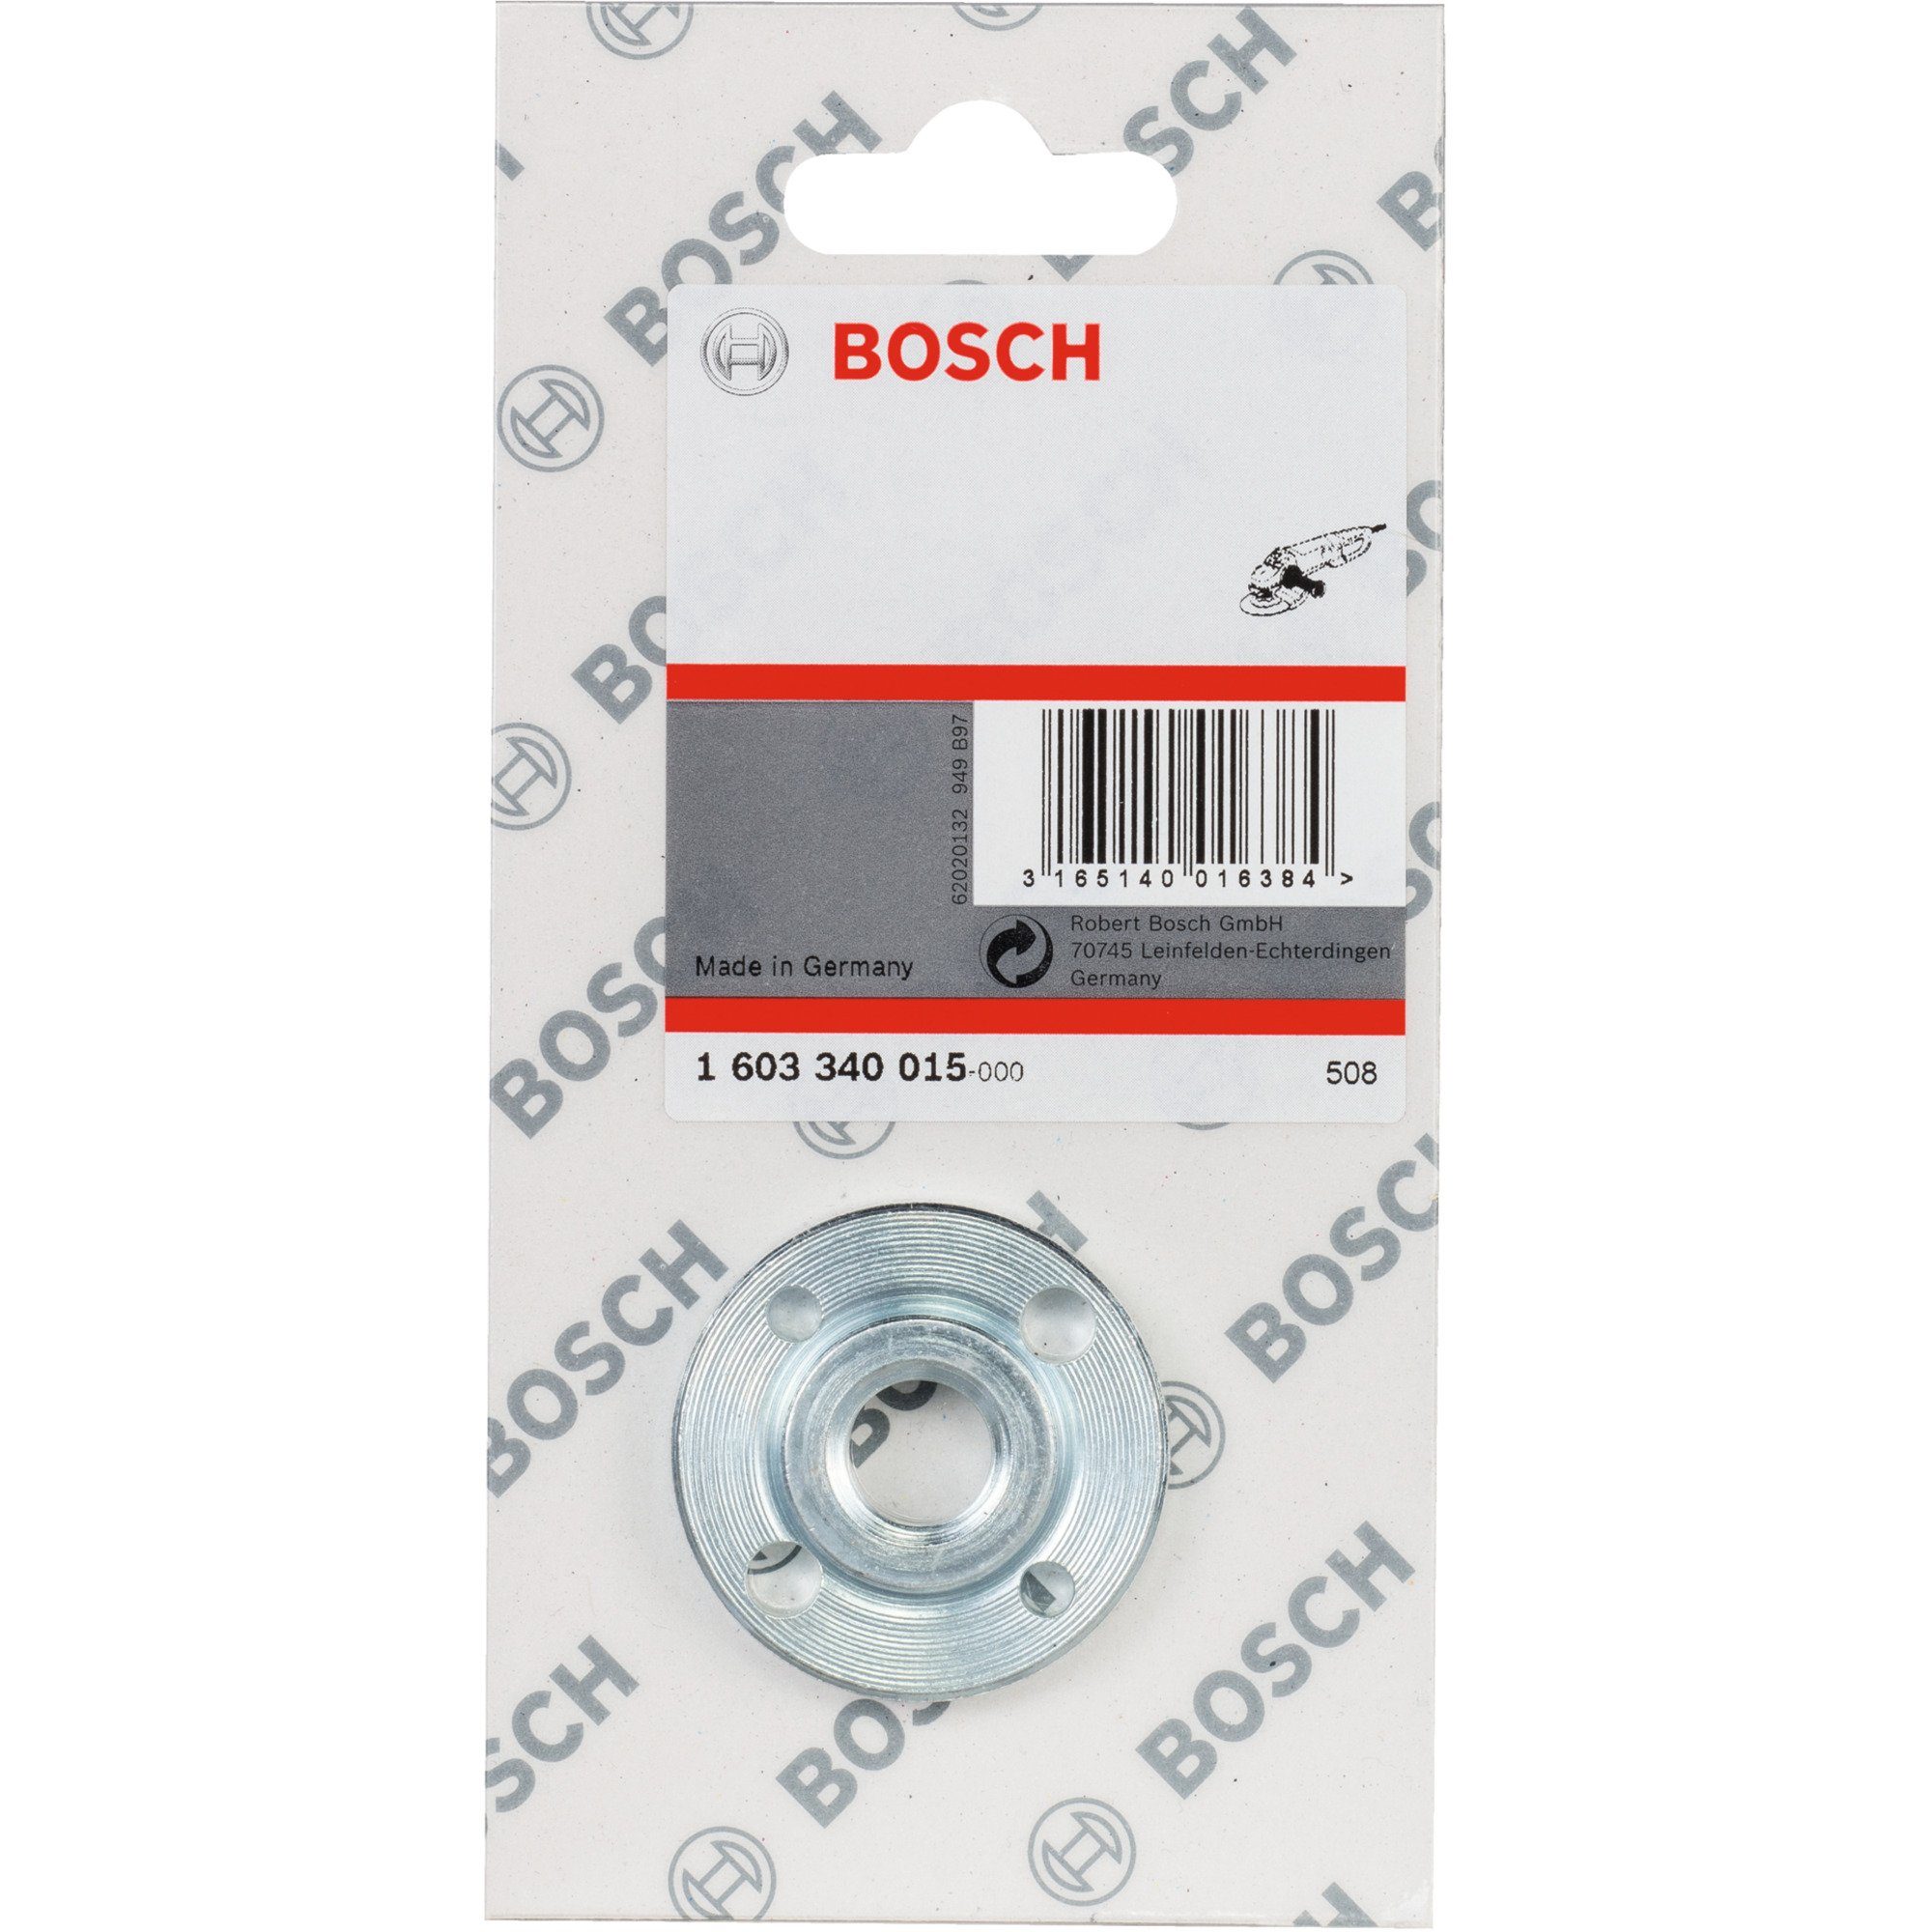 BOSCH Schleifscheibe Bosch Professional Rundmutter für